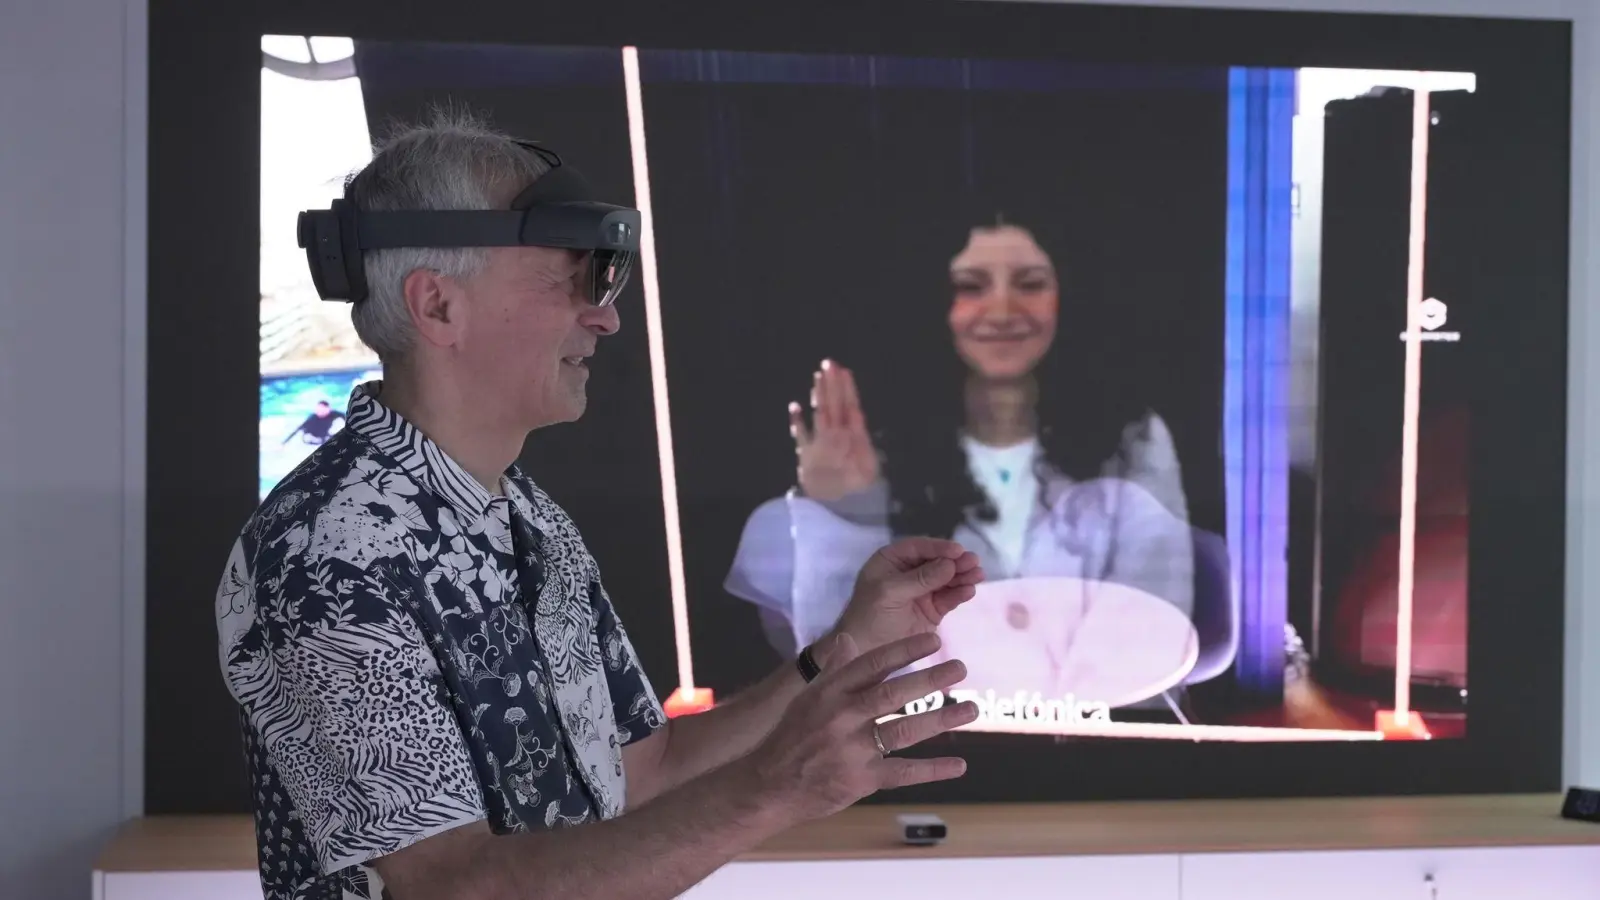 O2-Innovationsmanager Karsten Erlebach spricht via VR-Brille mit seiner Kollegin, die er in der Brille plastisch als Hologramm sieht. (Foto: Barbaros Bulgurcu/o2 Telefonica/dpa)